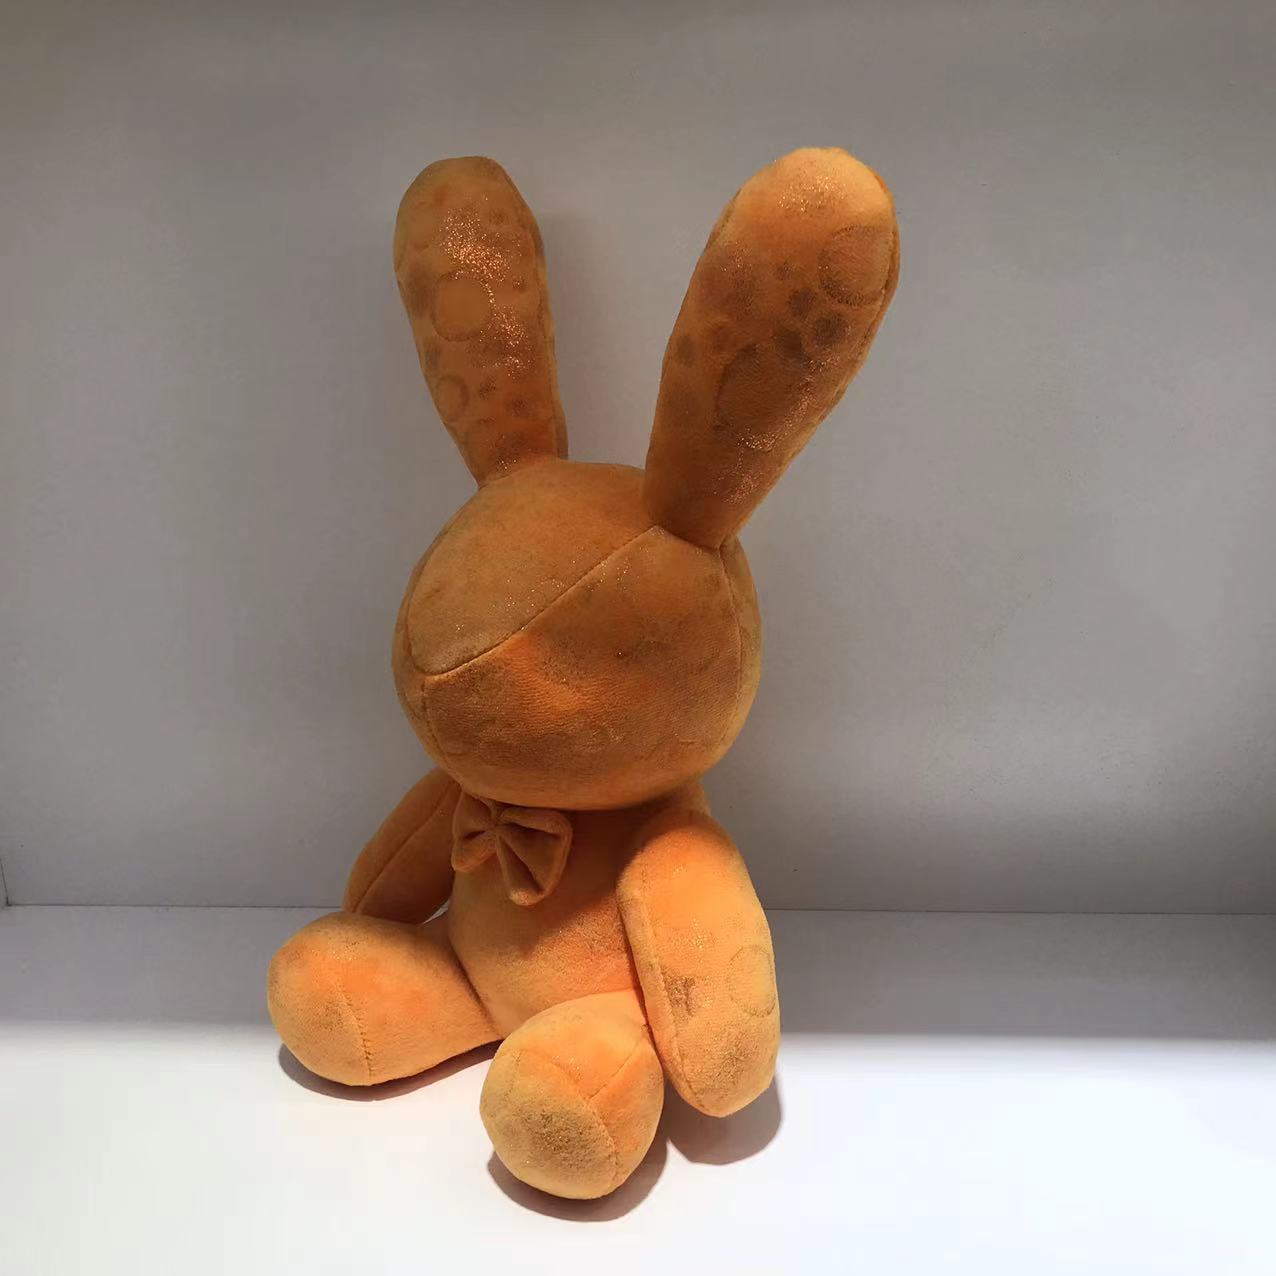 2022 soft stuffed bunny toy 